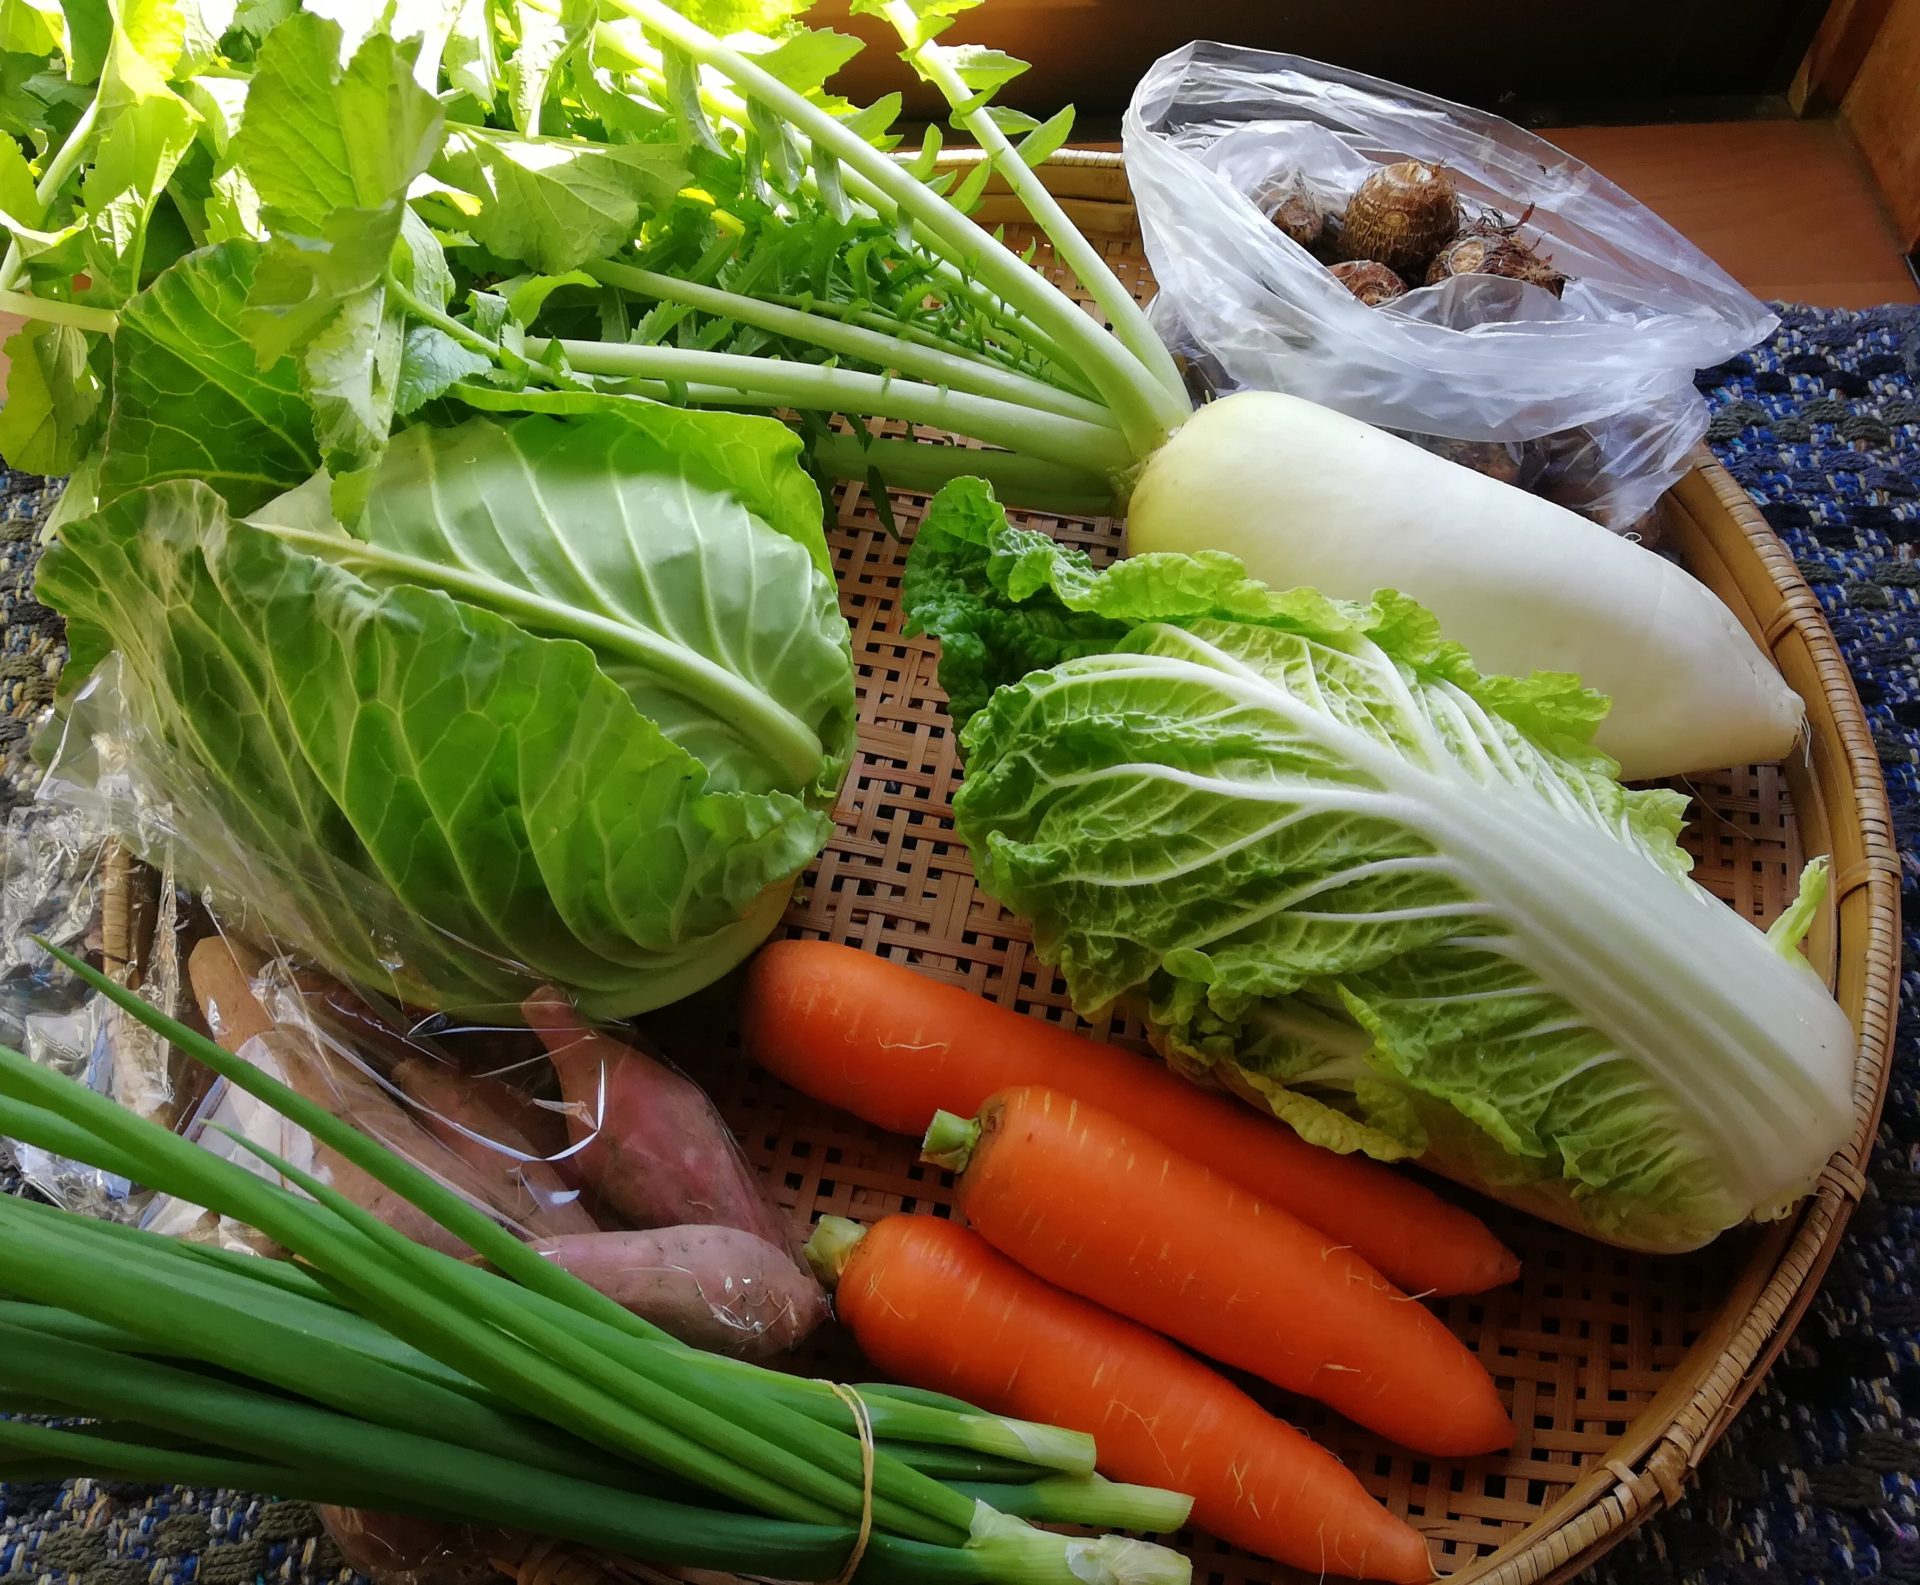 ココニコヒロバ 無農薬野菜セットの宅配 こころ にこにこ あんしんおやさい 愛知県江南市で有機野菜 無農薬野菜を作っています